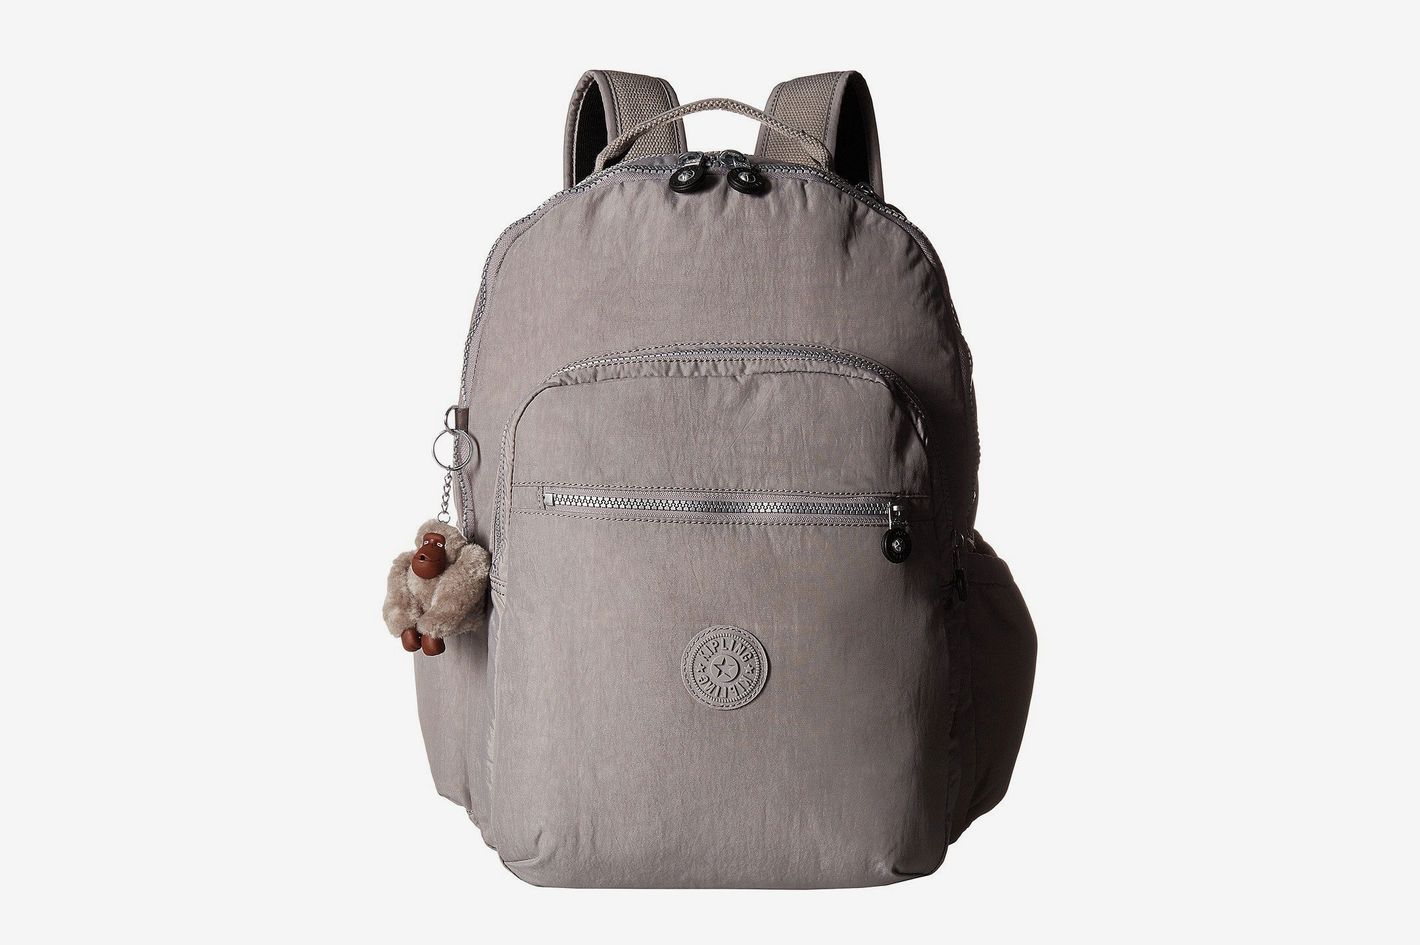 MAPOLO Five Zebra School Backpack Travel Bag Rucksack College Bookbag Travel Laptop Bag Daypack Bag for Men Women 